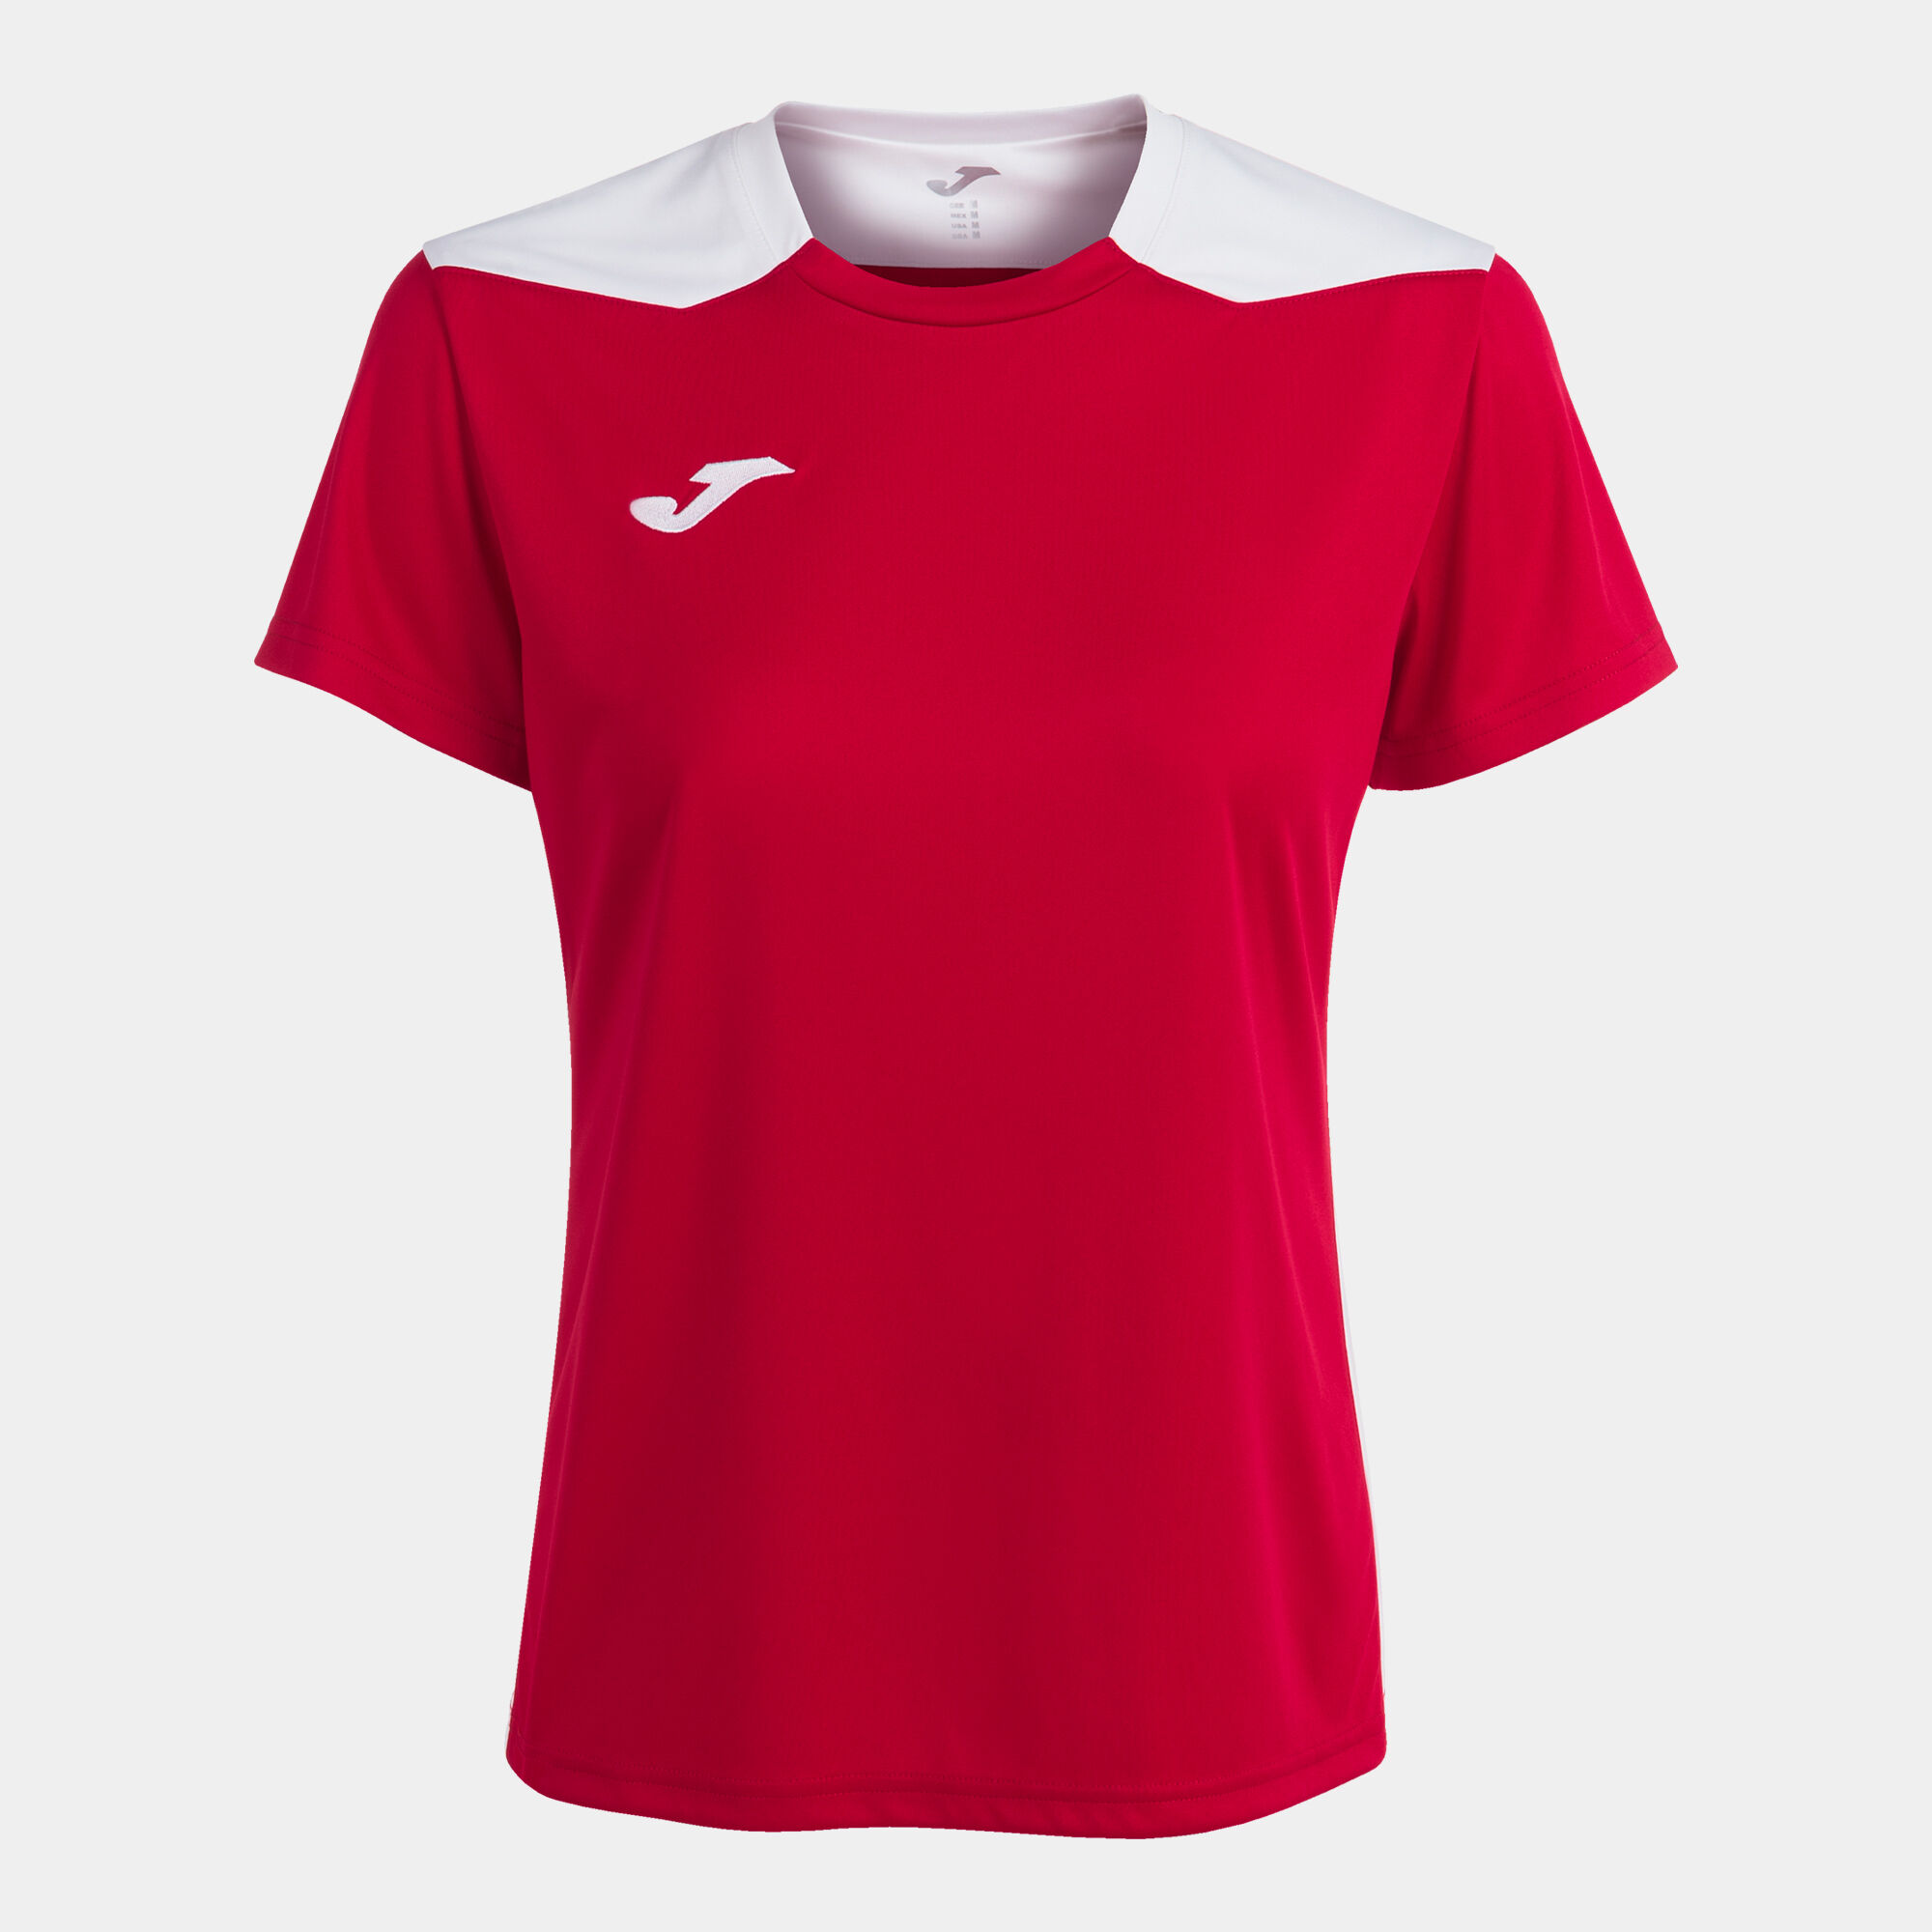 Camiseta manga corta mujer Championship VI rojo blanco